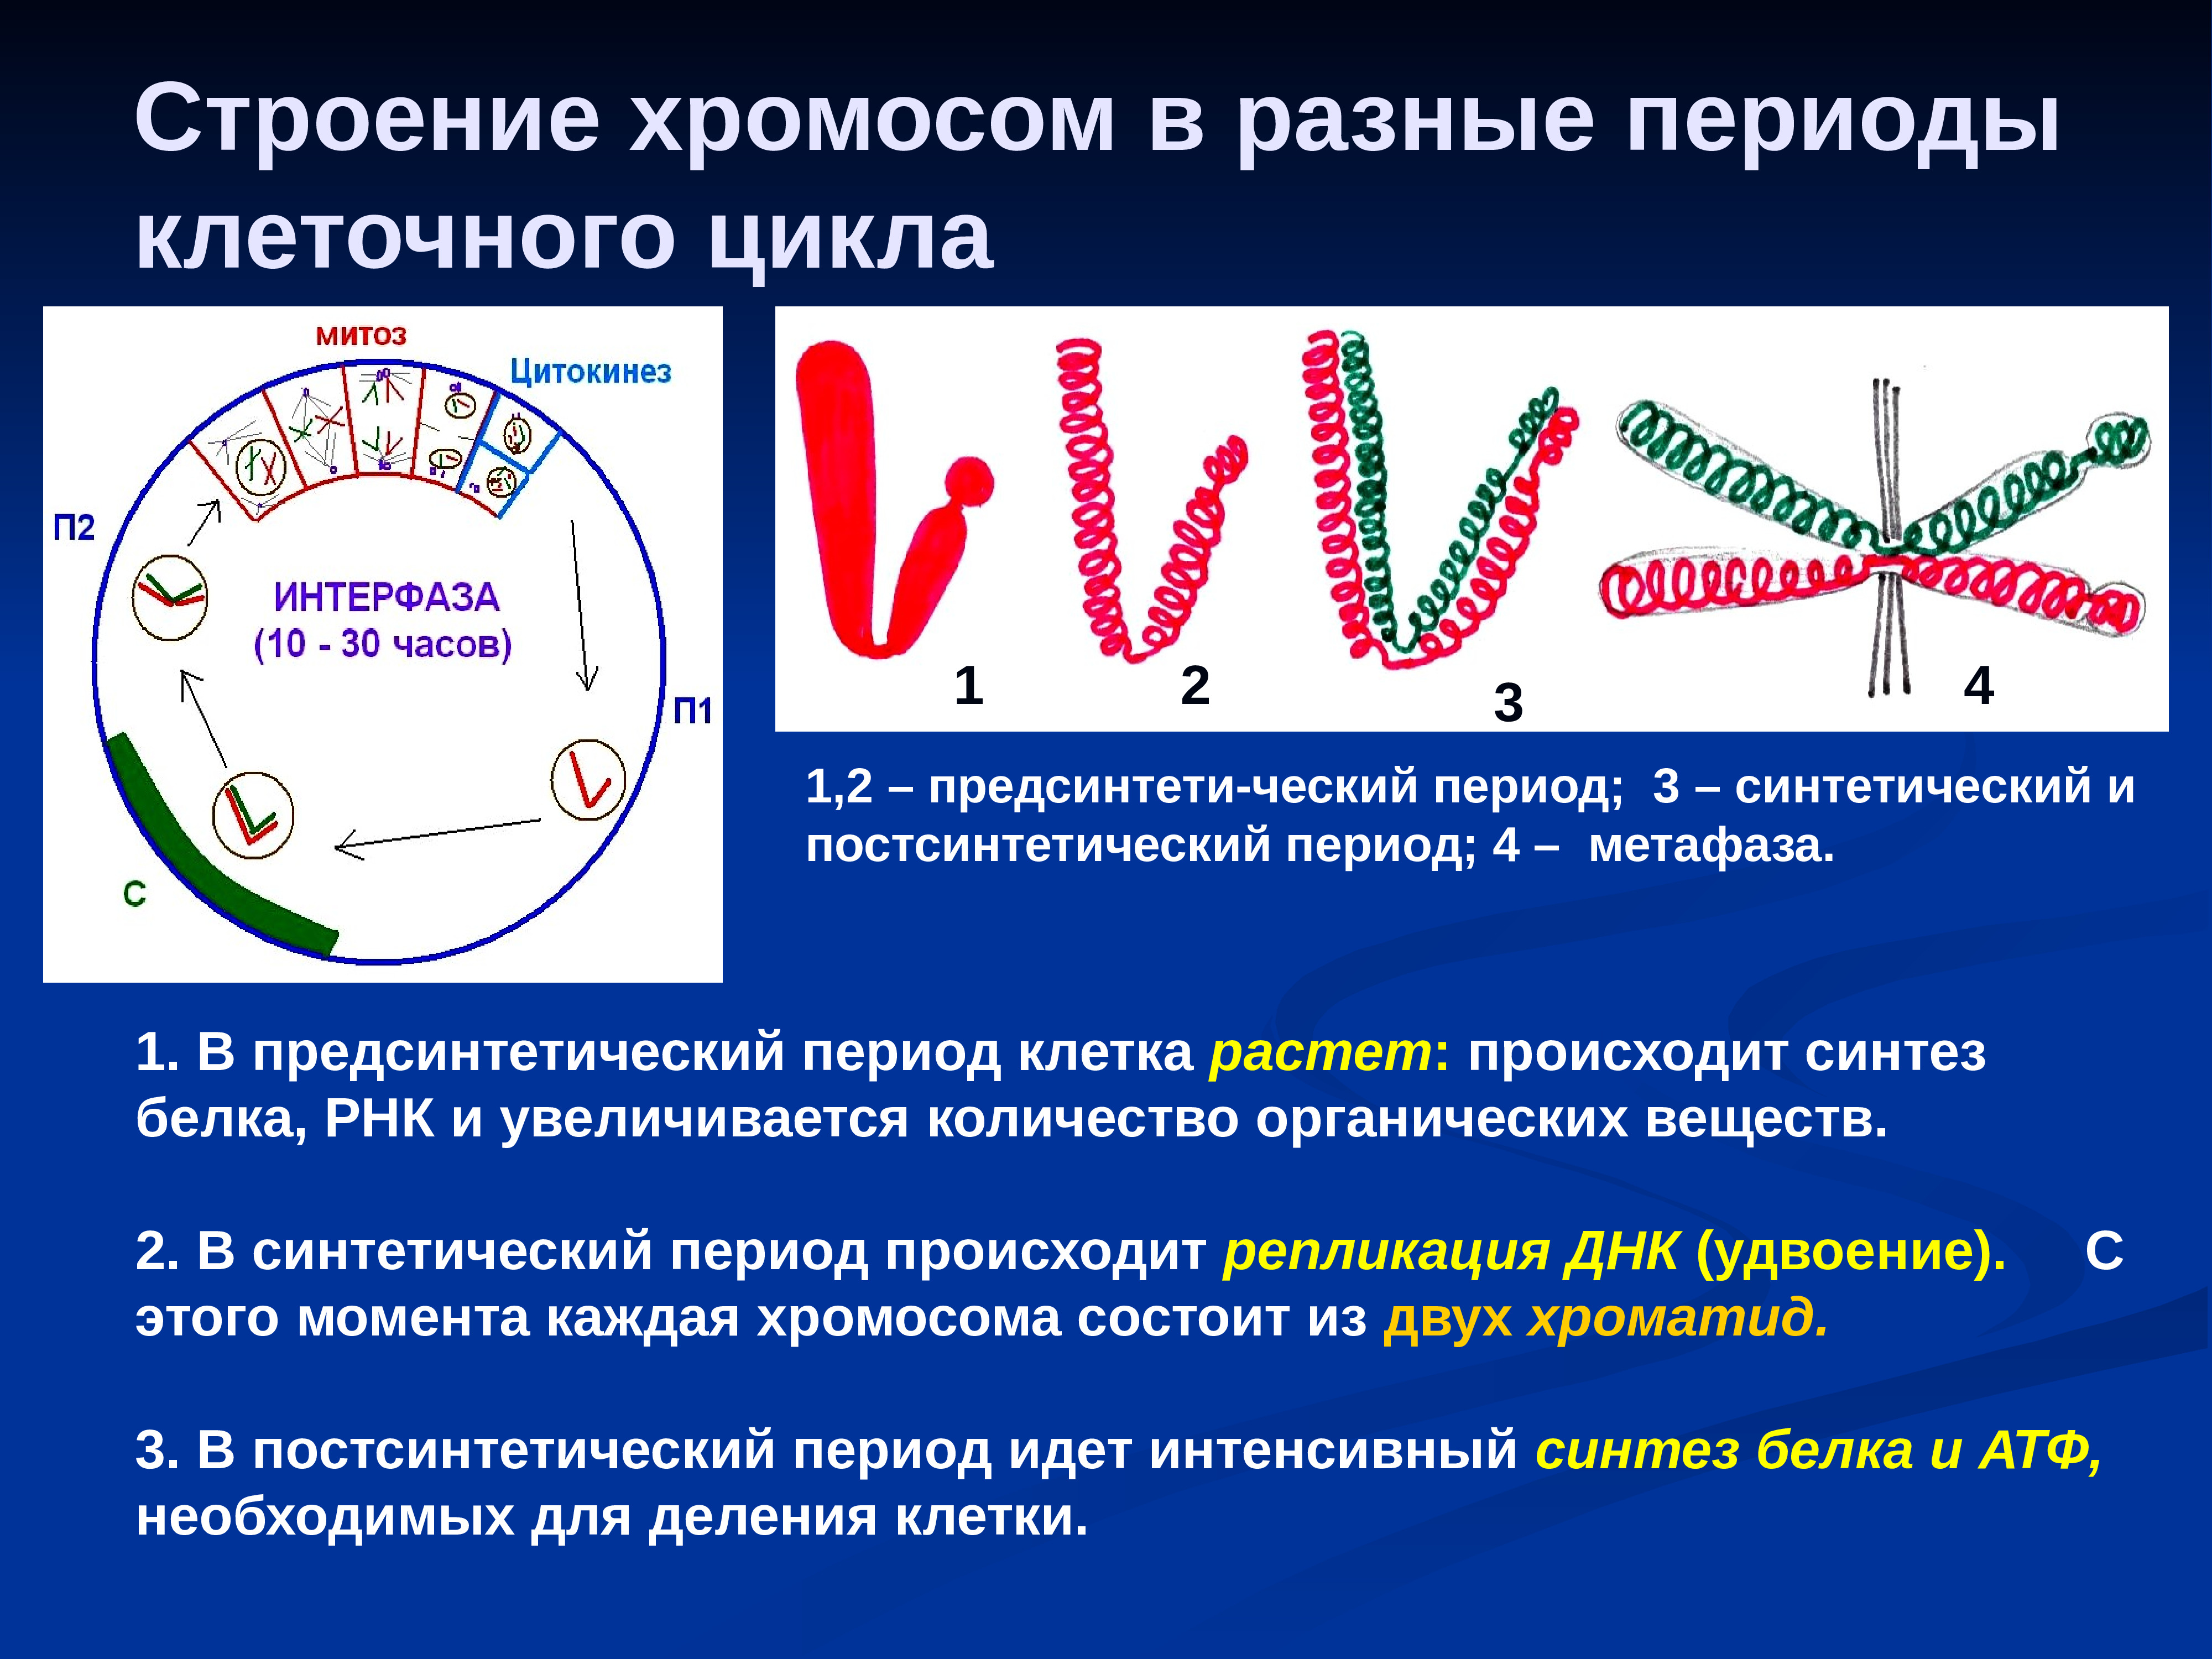 Установите последовательность изменений происходящих с хромосомами. Строение хромосомы. Строение хромосом в разные периоды клеточного цикла. Хромосом в разные периоды клеточного деления. Изменение хромосом в клеточном цикле.